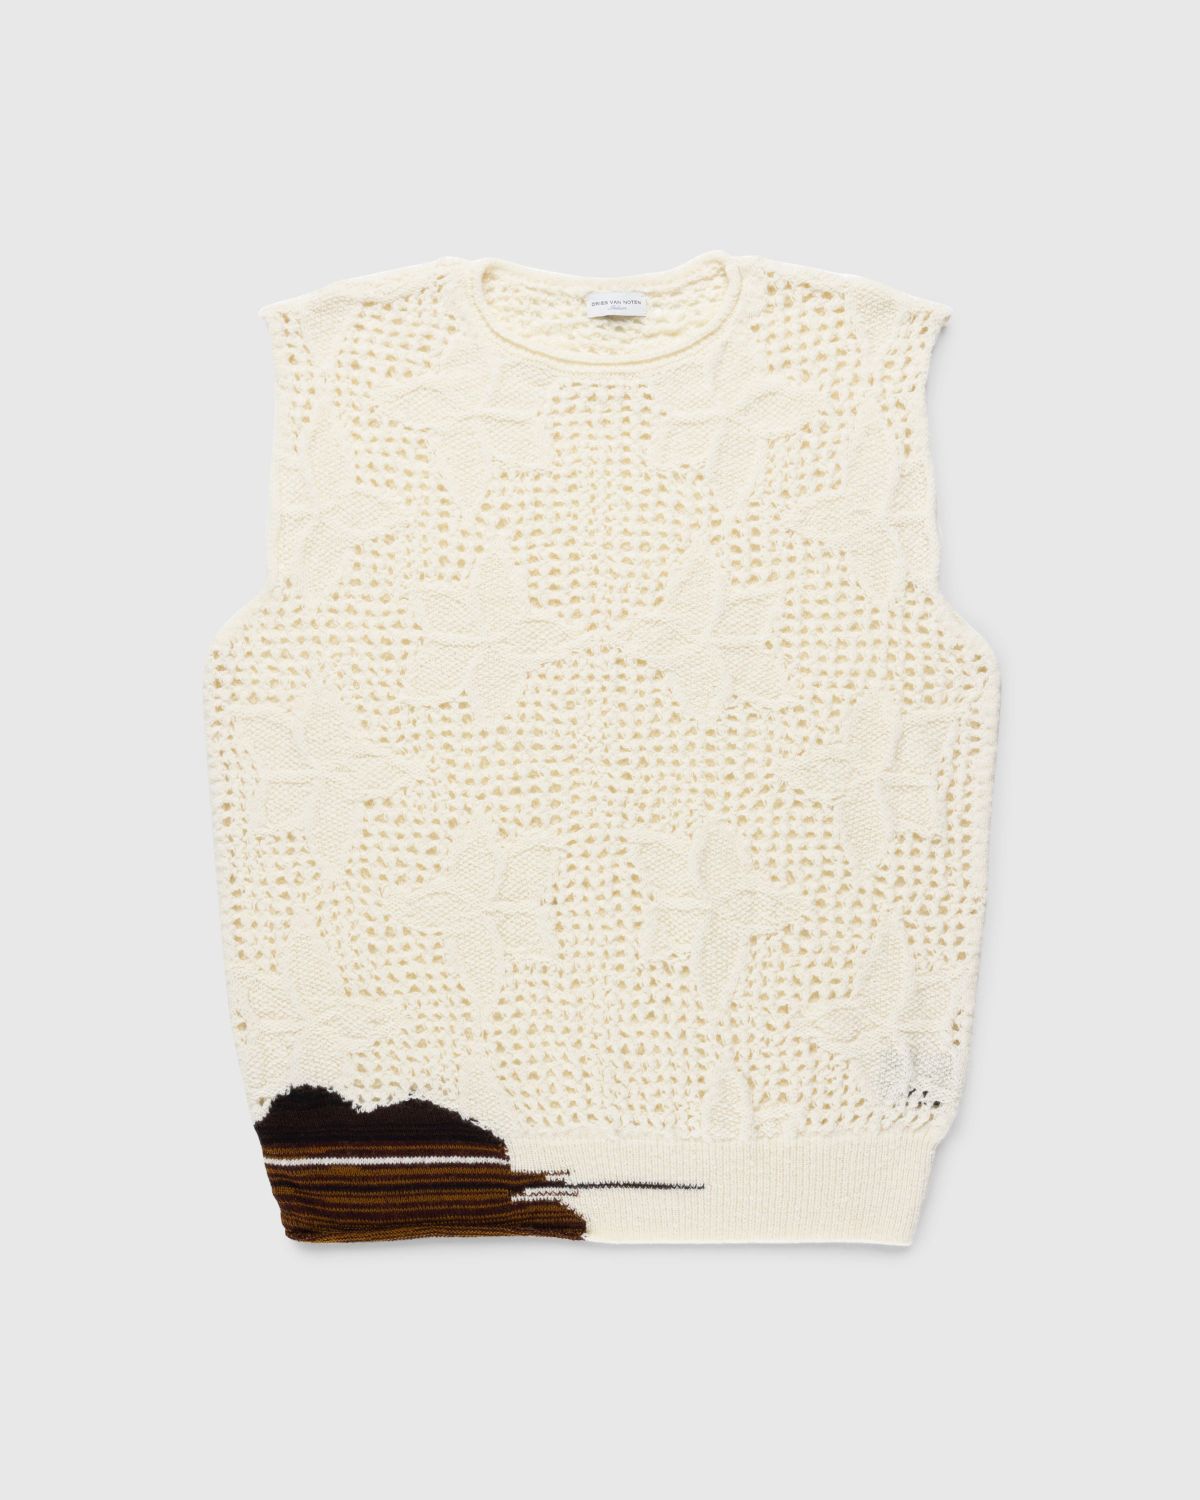 Dries van Noten – Meddo Knit Sweater Vest Ecru - Knitwear - White - Image 1